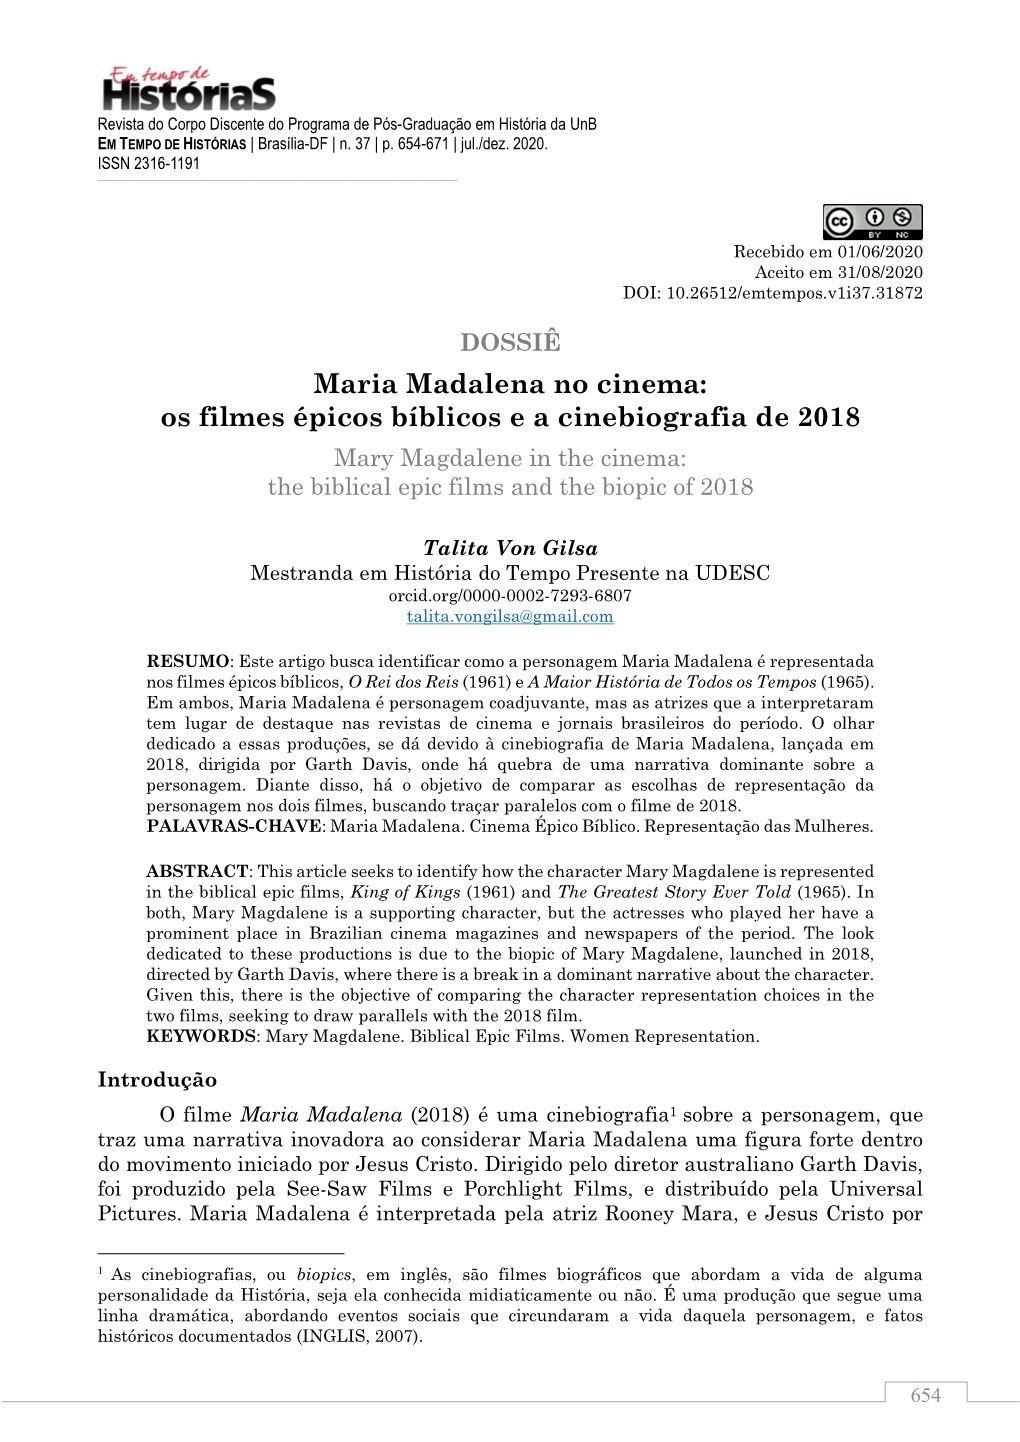 Maria Madalena No Cinema: Os Filmes Épicos Bíblicos E a Cinebiografia De 2018 Mary Magdalene in the Cinema: the Biblical Epic Films and the Biopic of 2018